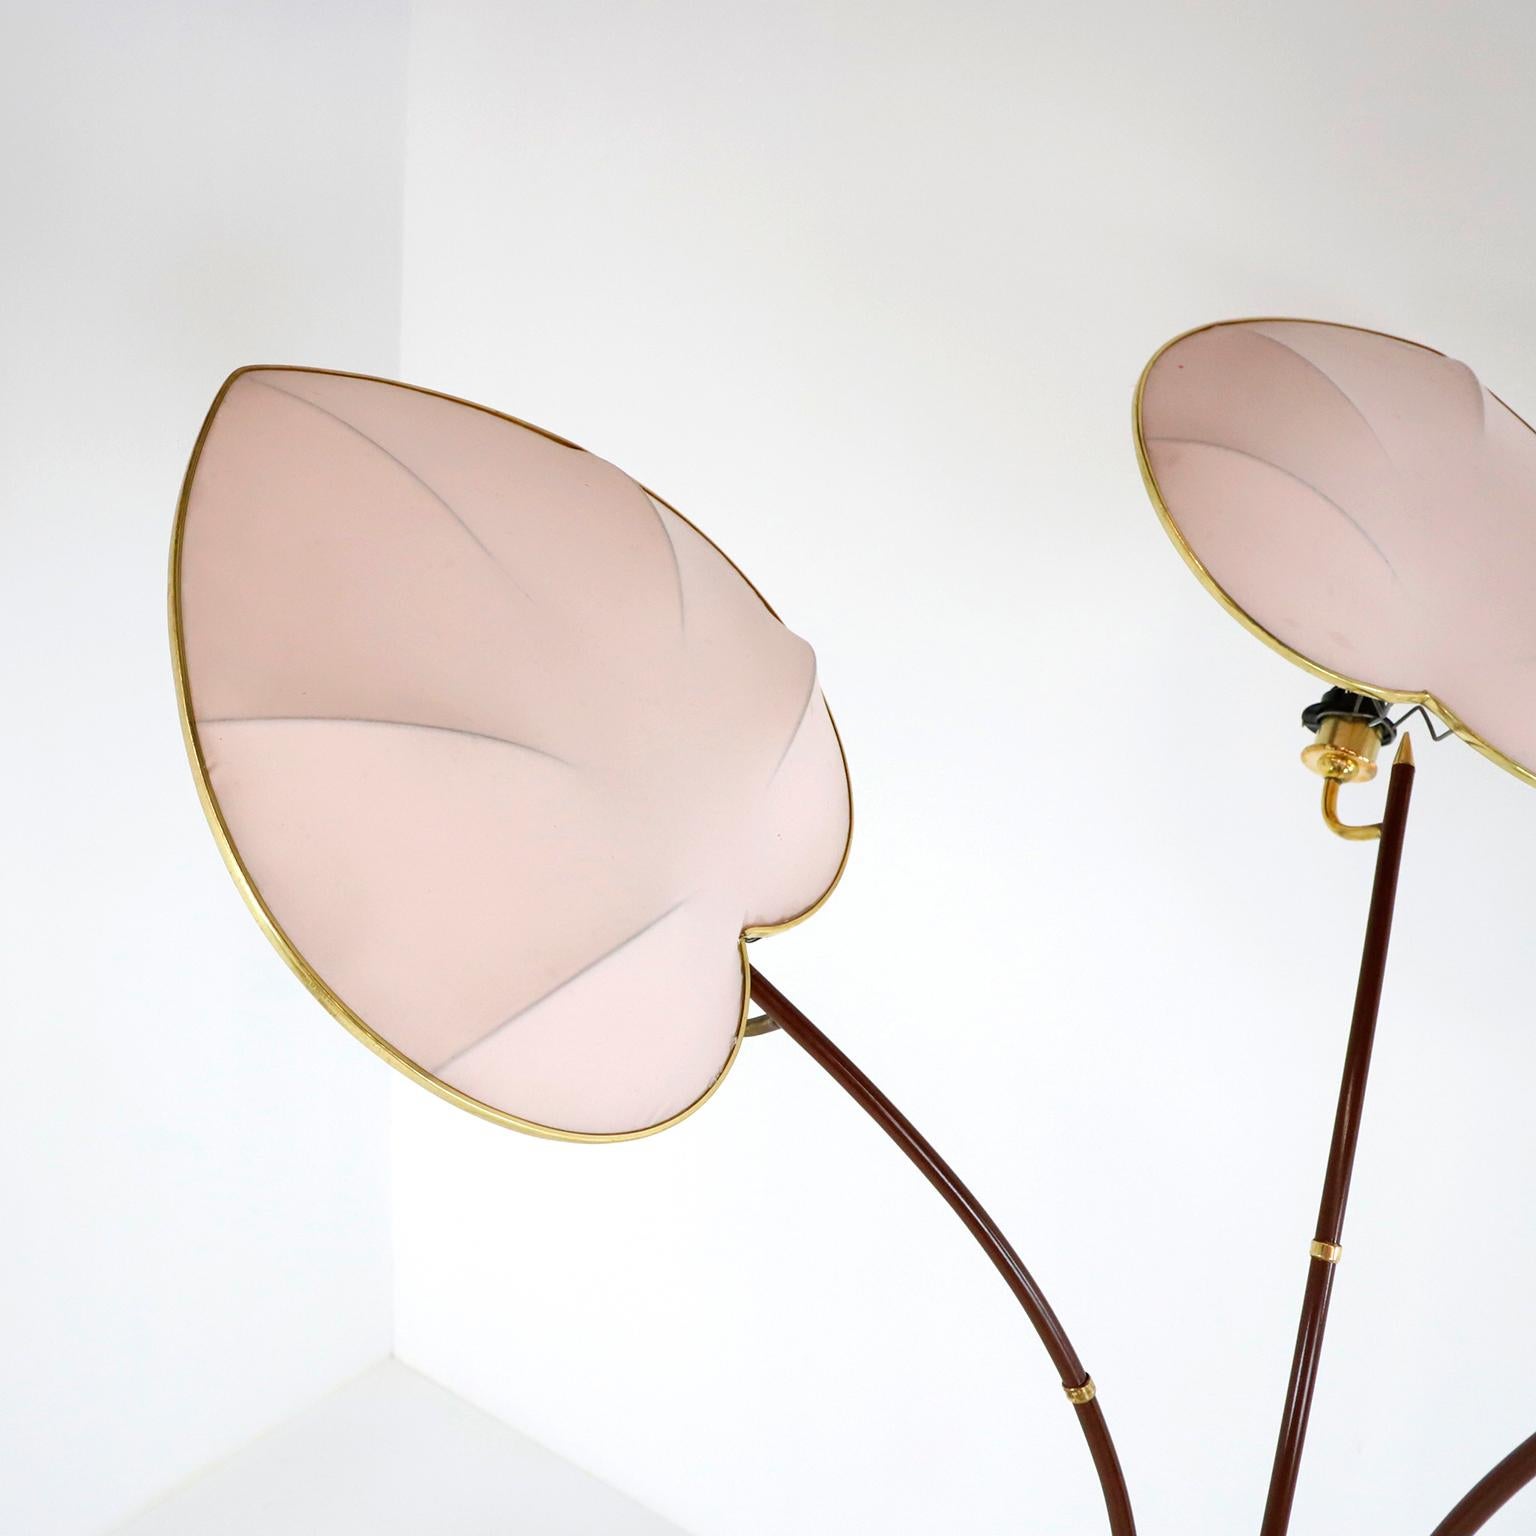 Um 1960, Wir bieten diese Palm Stehleuchte von Arturo Pani an. Diese Lampe ist vielleicht eine der skurrilsten unter all den wunderbaren Entwürfen von Arturo Pani. Die aus Messing und weinfarben lackiertem Metallrohr gefertigte Leuchte lässt durch